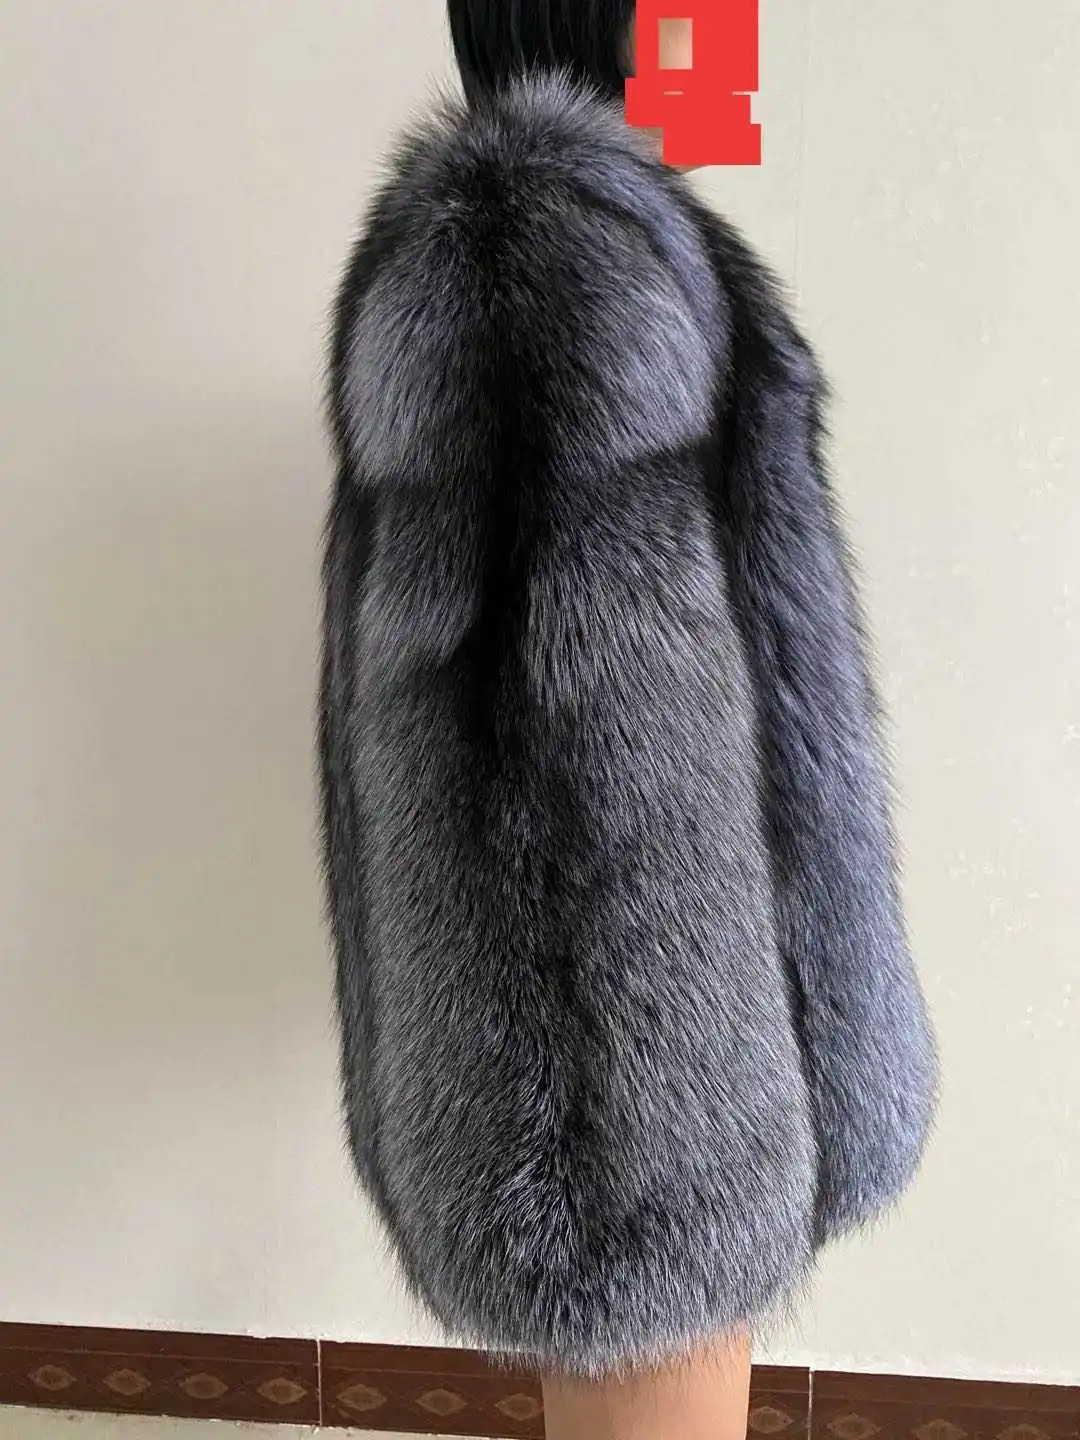 FURYOUME 2022 Winter Women Real Silver Fox Fur Coat Wholeskin Natural Fur Jacket Ladies Luxury Outerwear Long Sleeves Overcoat enlarge